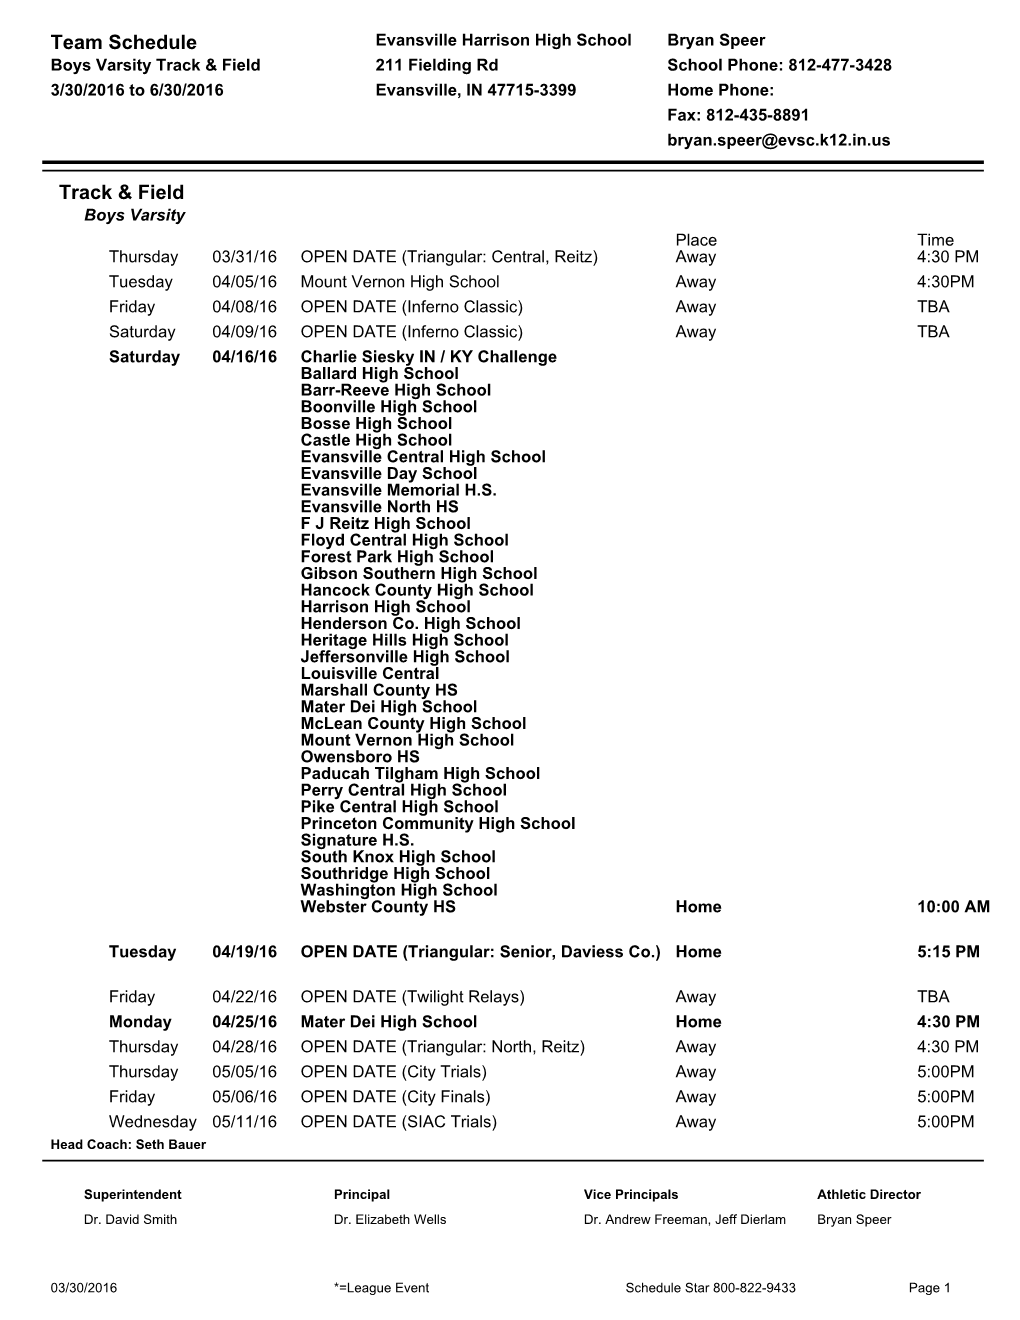 Team Schedule Track & Field